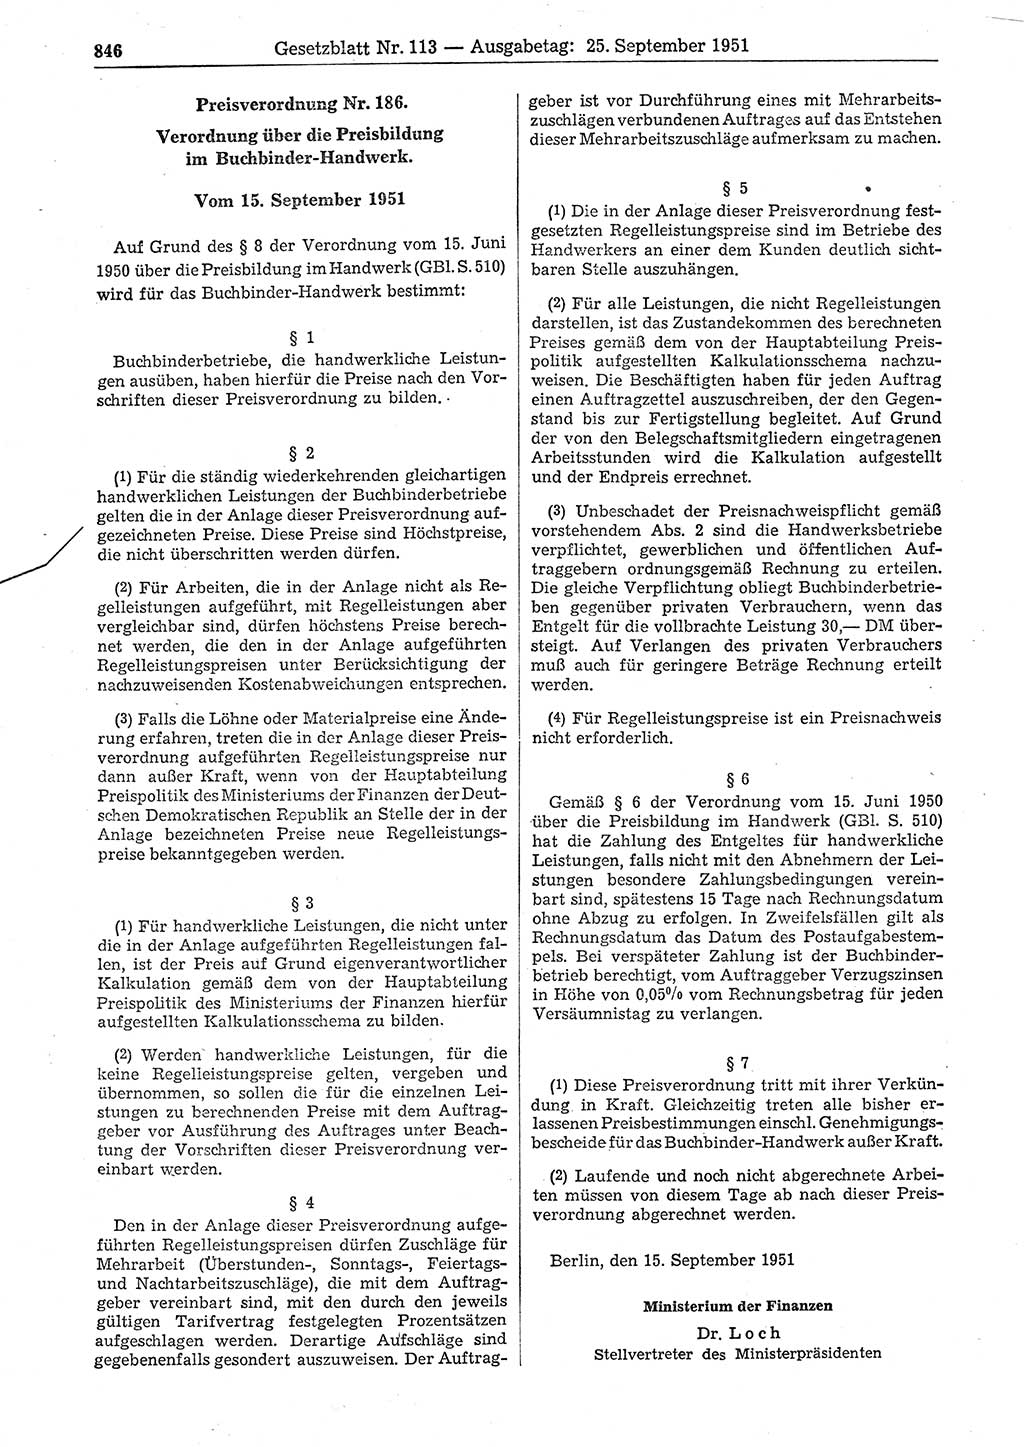 Gesetzblatt (GBl.) der Deutschen Demokratischen Republik (DDR) 1951, Seite 846 (GBl. DDR 1951, S. 846)